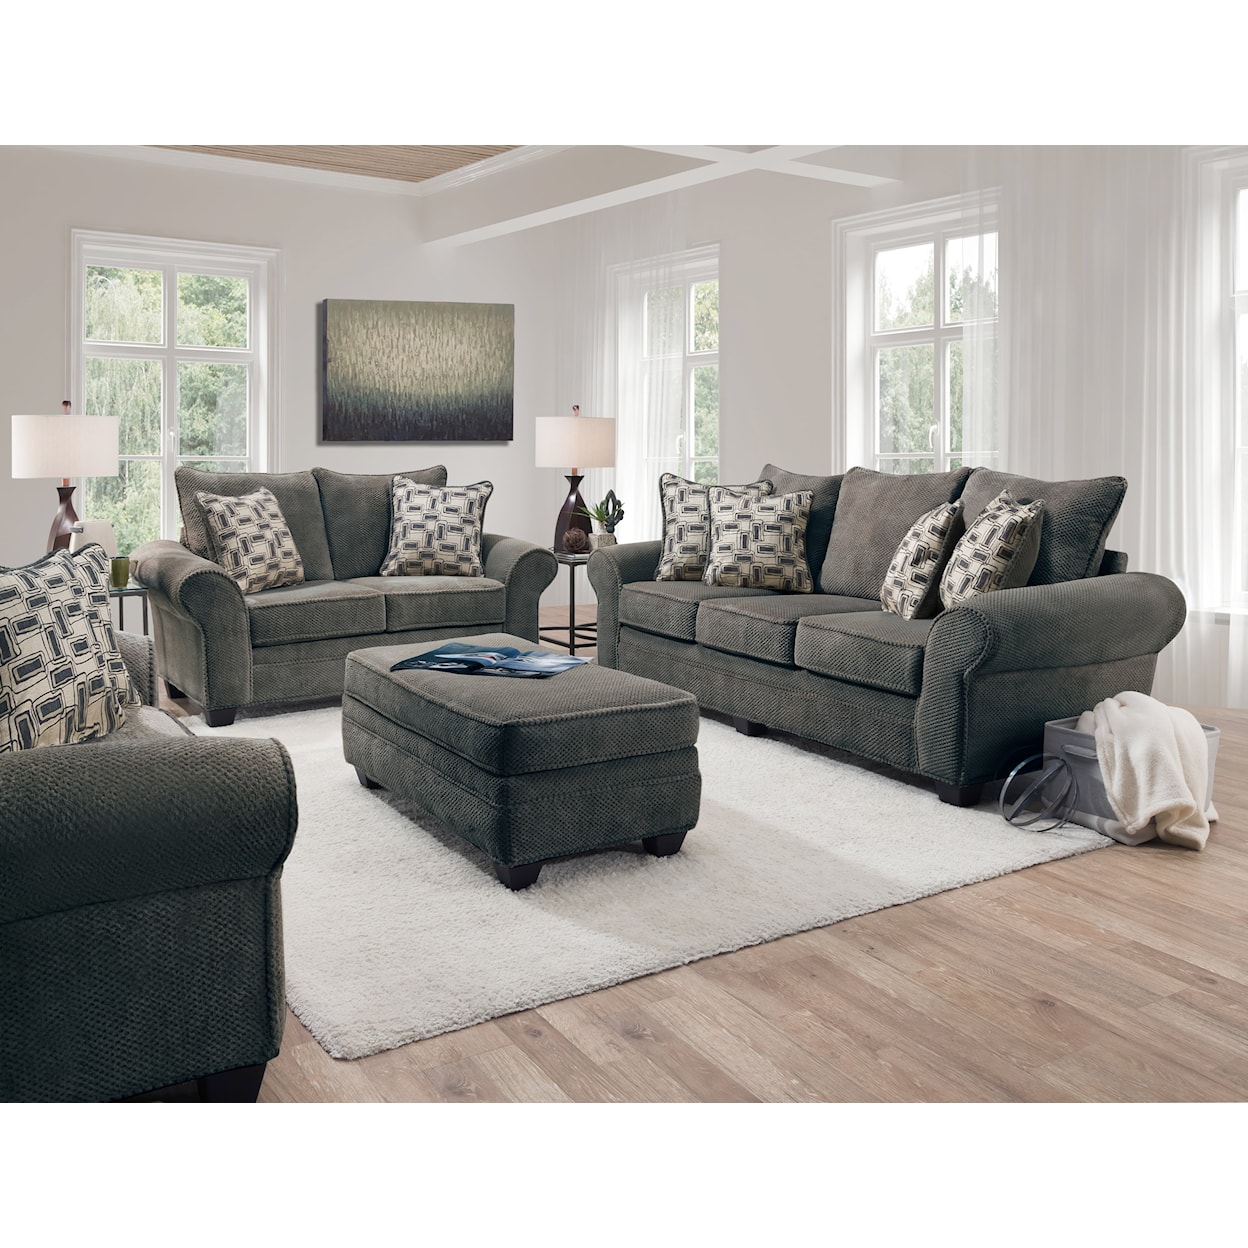 Behold Home 1000 Artesia Sofa